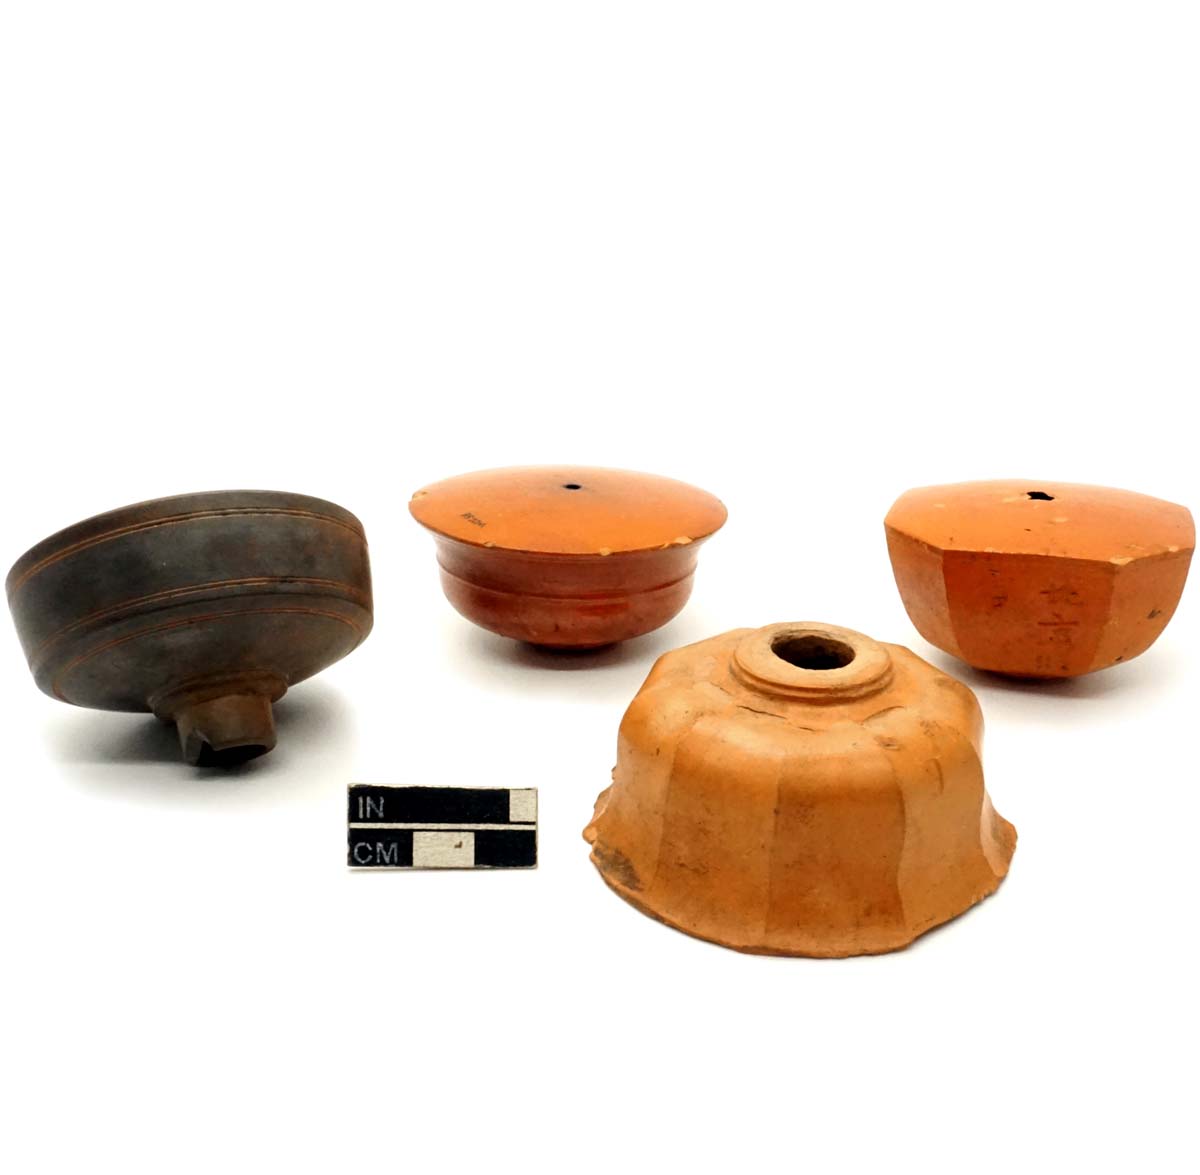 Opium pipe bowls, ceramic.